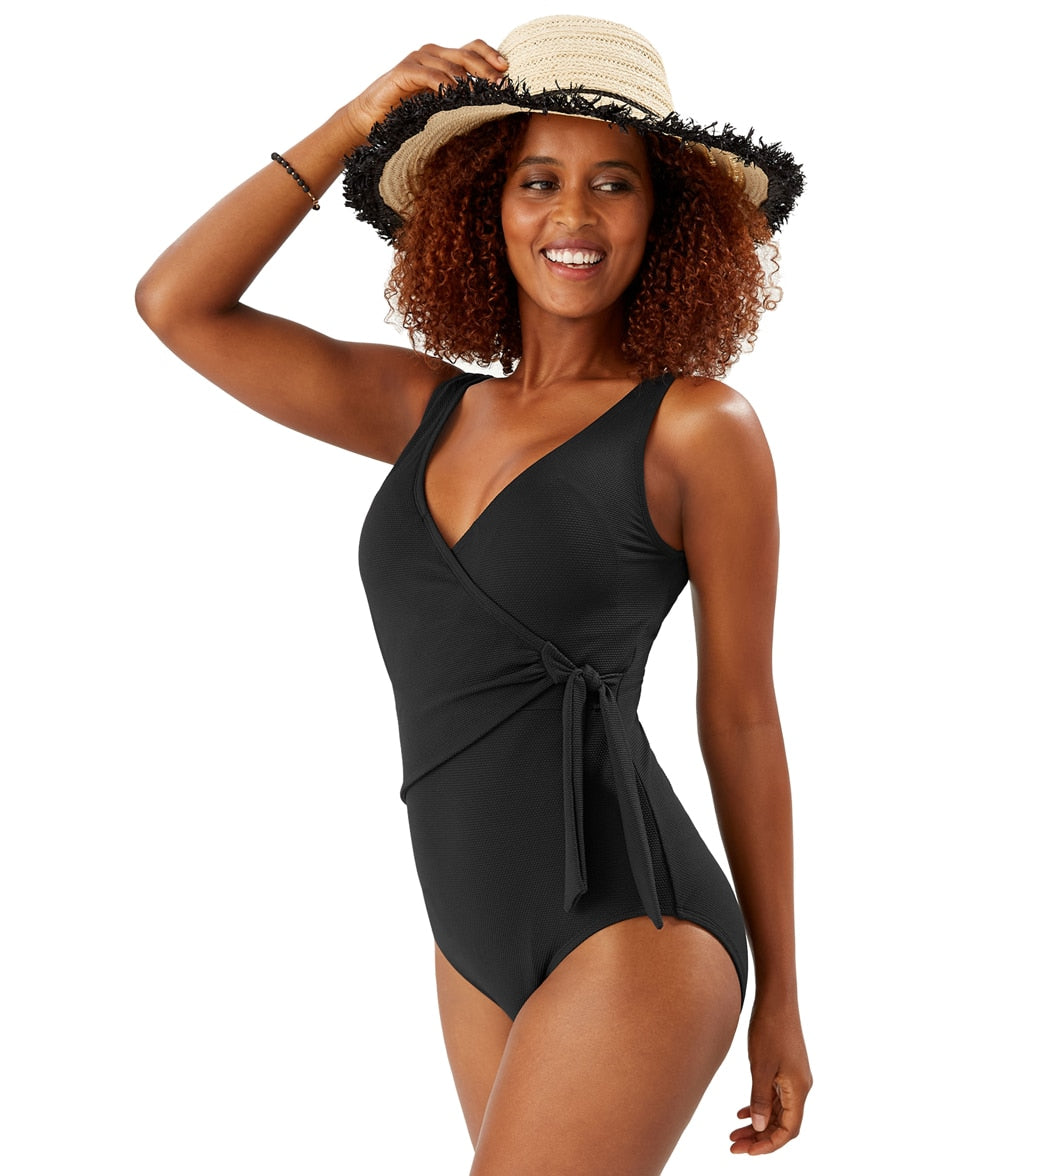 Tommy Bahama Women's Pique Colada Wrap One Piece Swimsuit - Black 10 - Swimoutlet.com